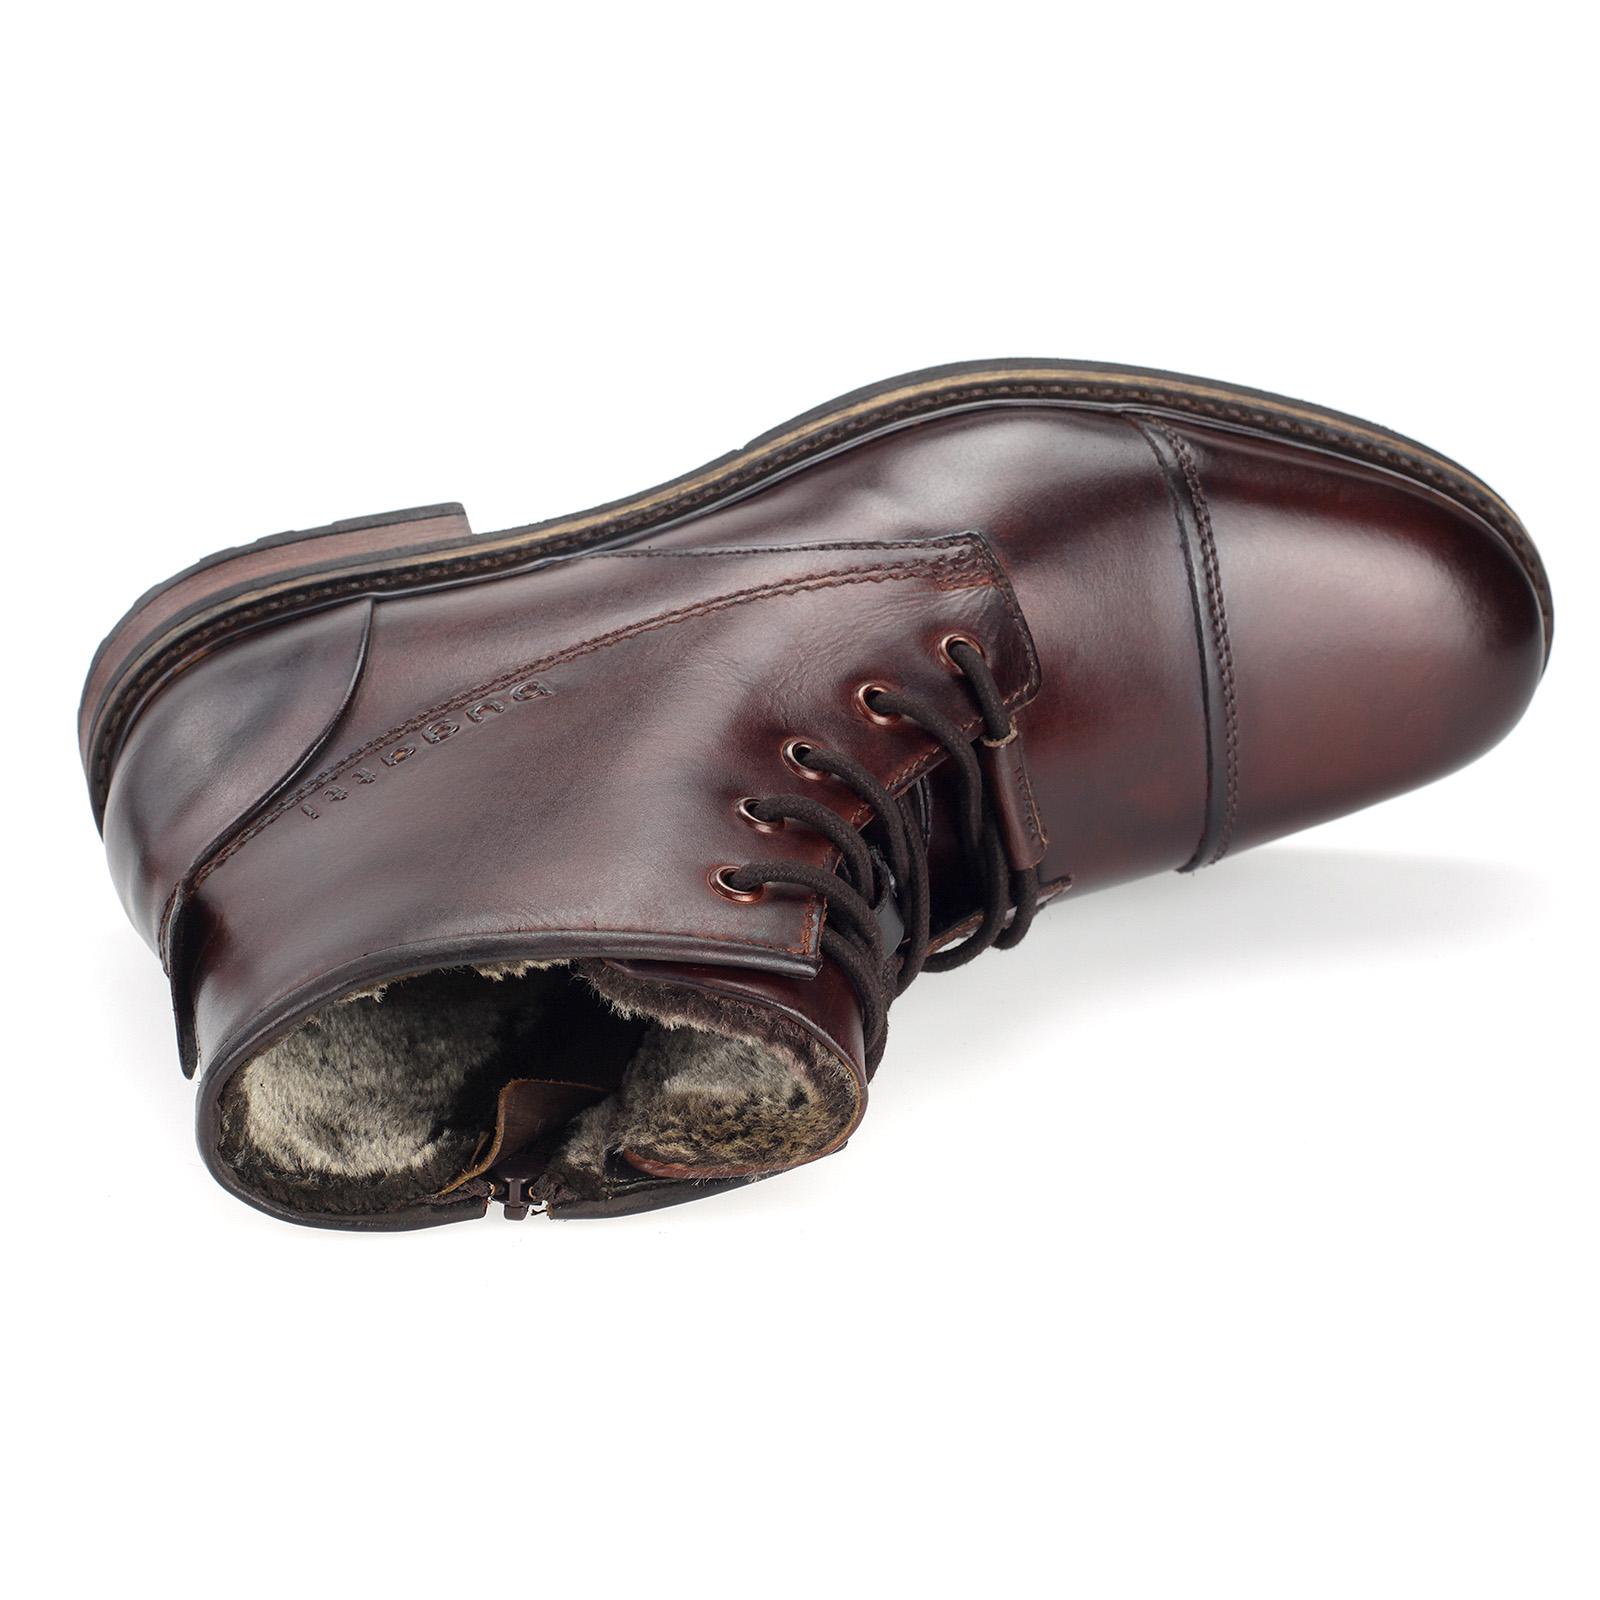 Bugatti Herren Stiefel Leder Boots Gefüttert Business Schuhe Elegant Dk.Braun 331-78252-1000-6100